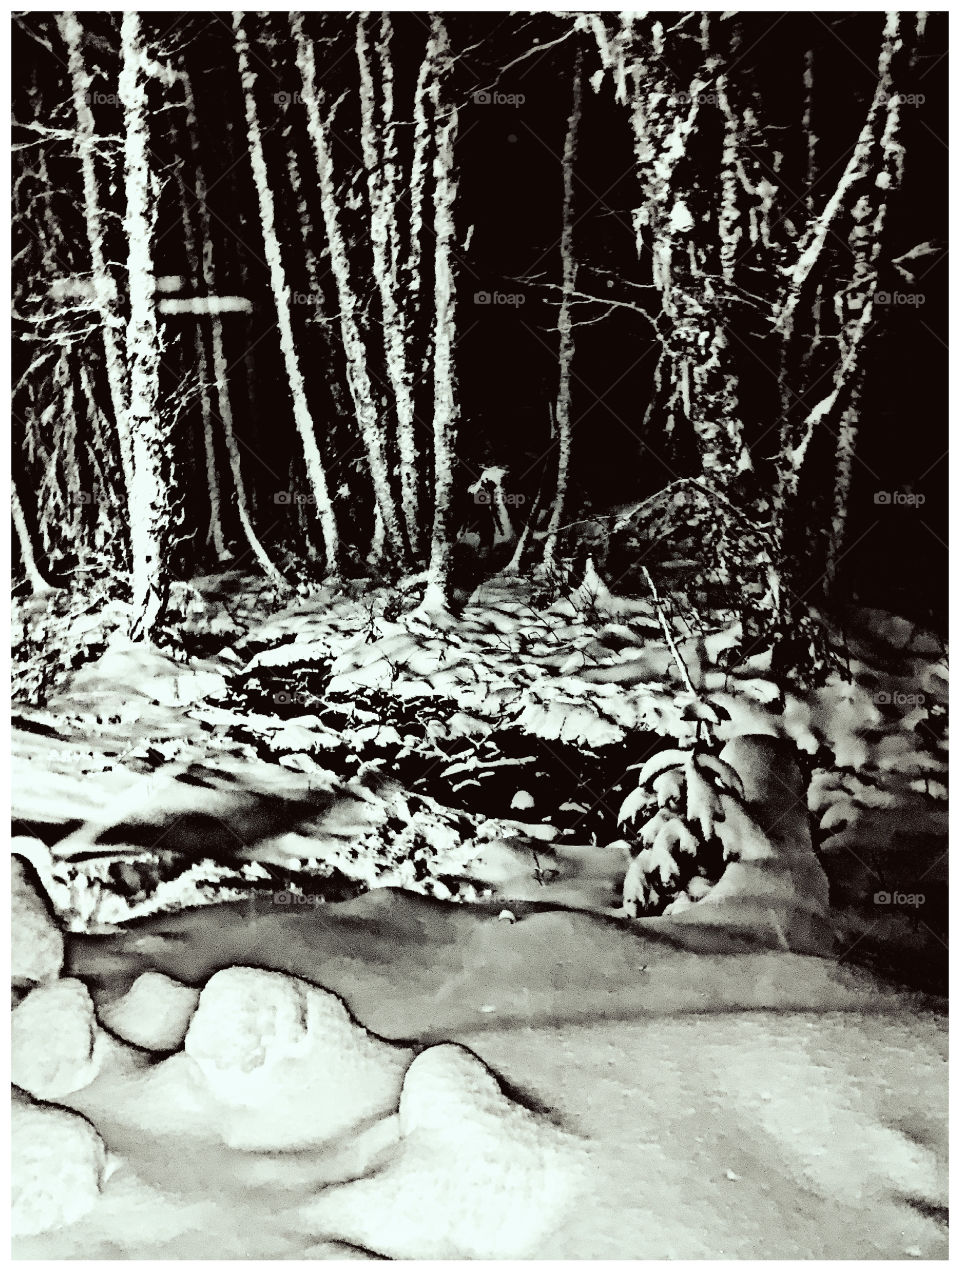 Snowy creek